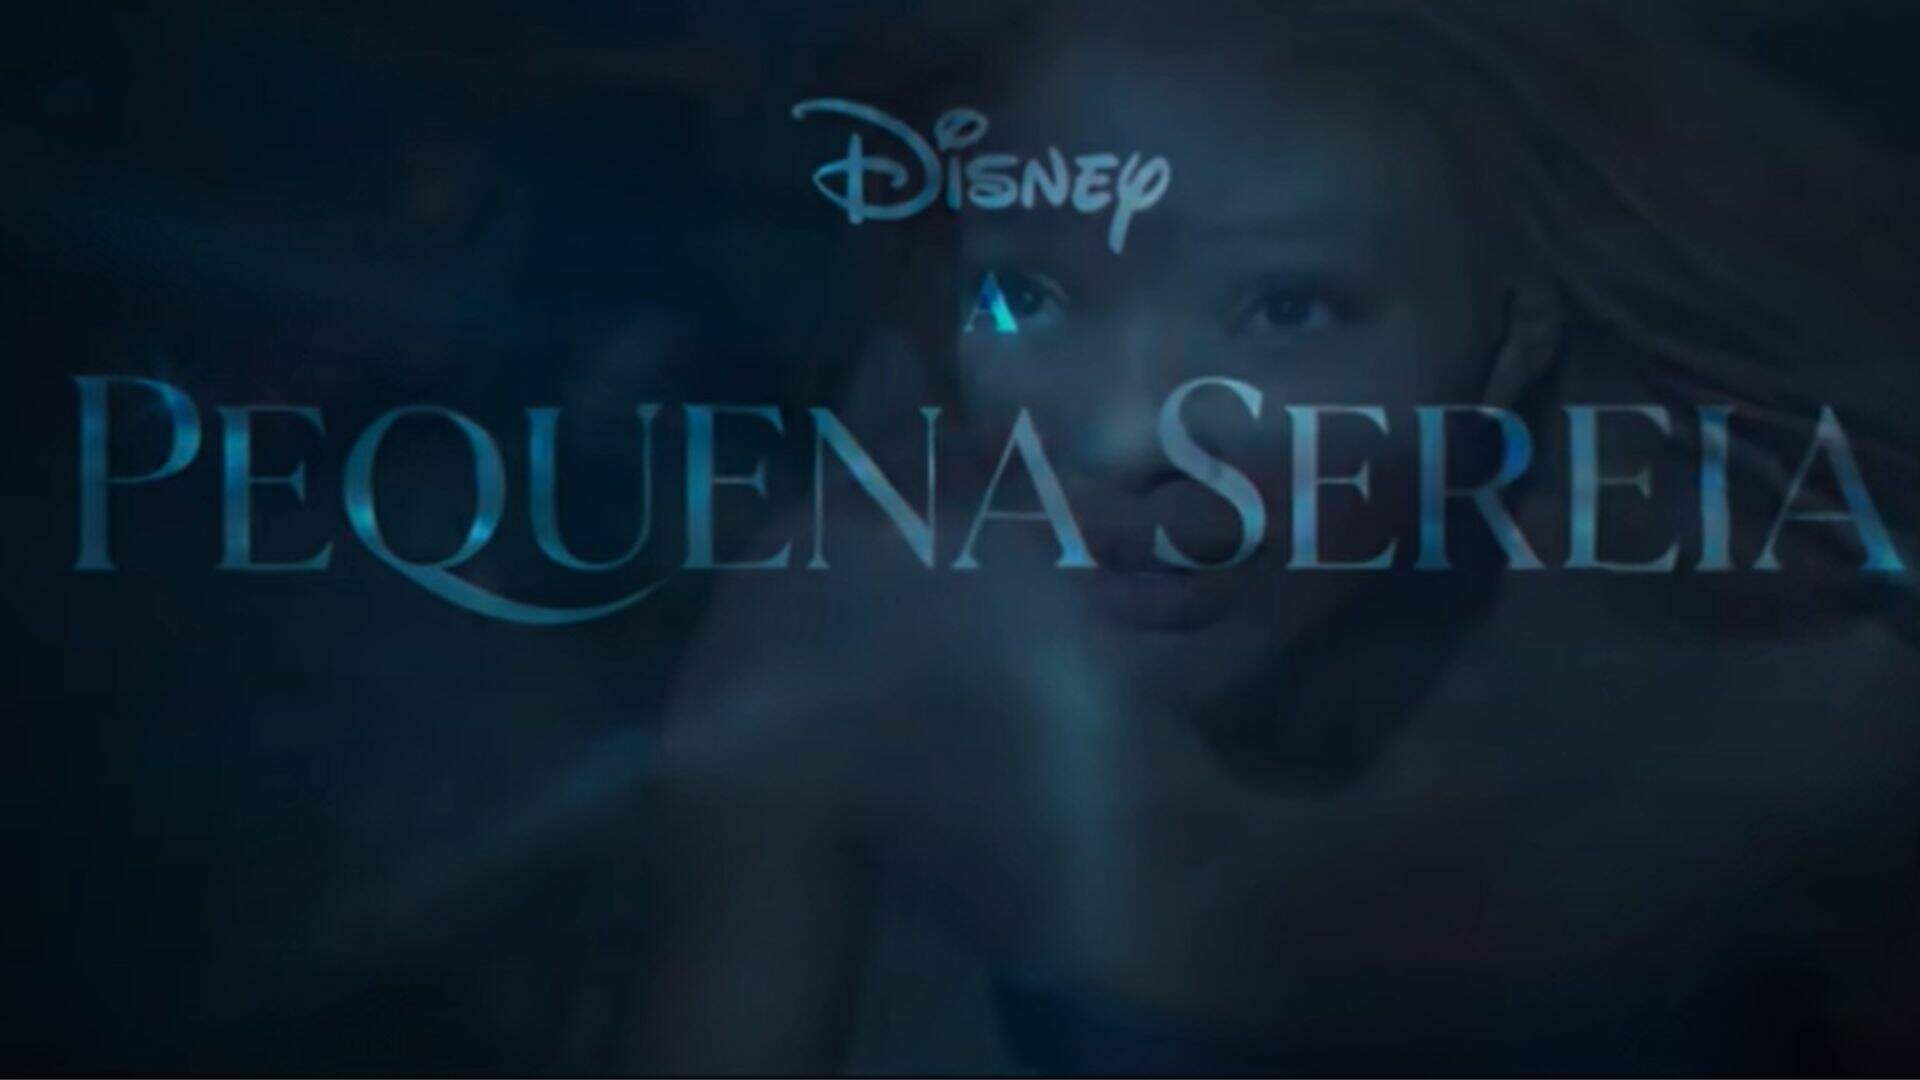 Disney revela data de estreia e visual de nova Pequena Sereia, confira